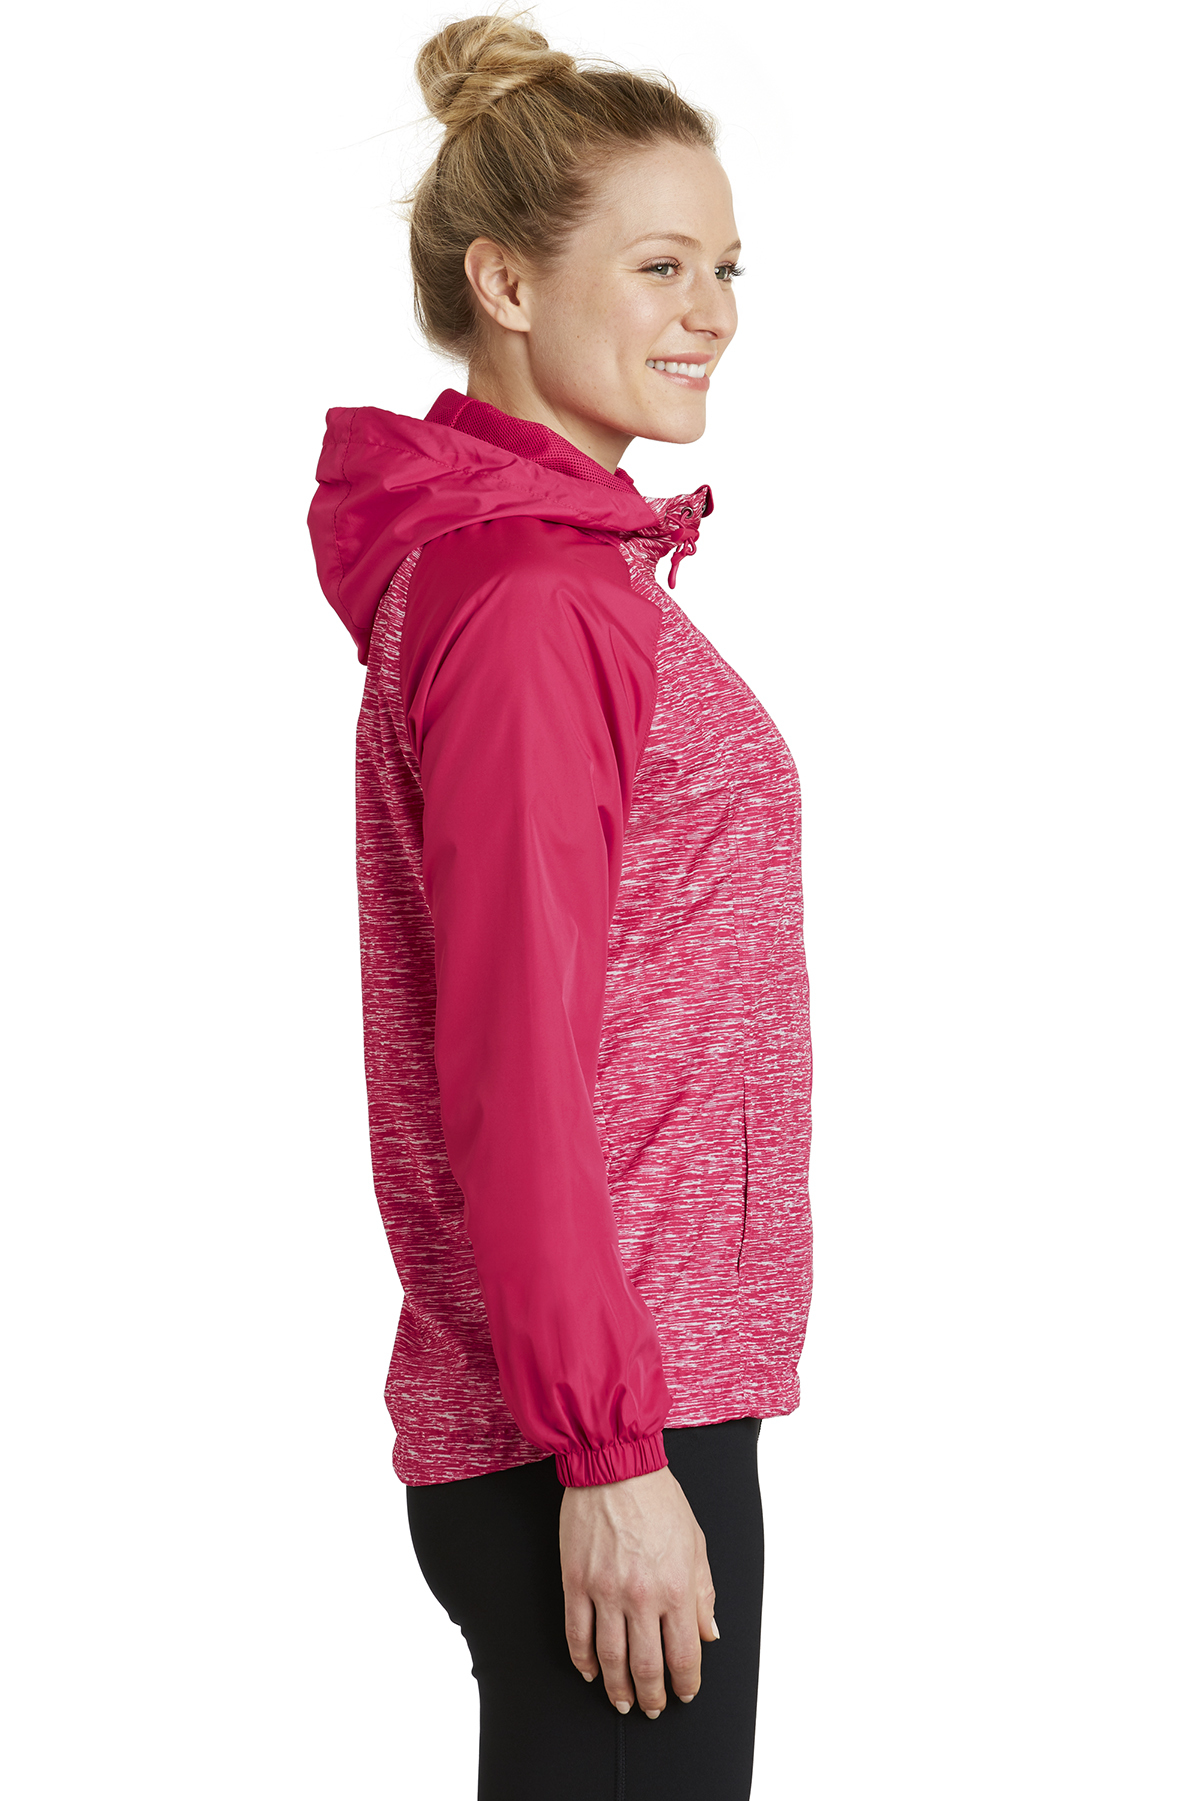 Sport-Tek Ladies Heather Colorblock Raglan Hooded Wind Jacket | Product |  Sport-Tek